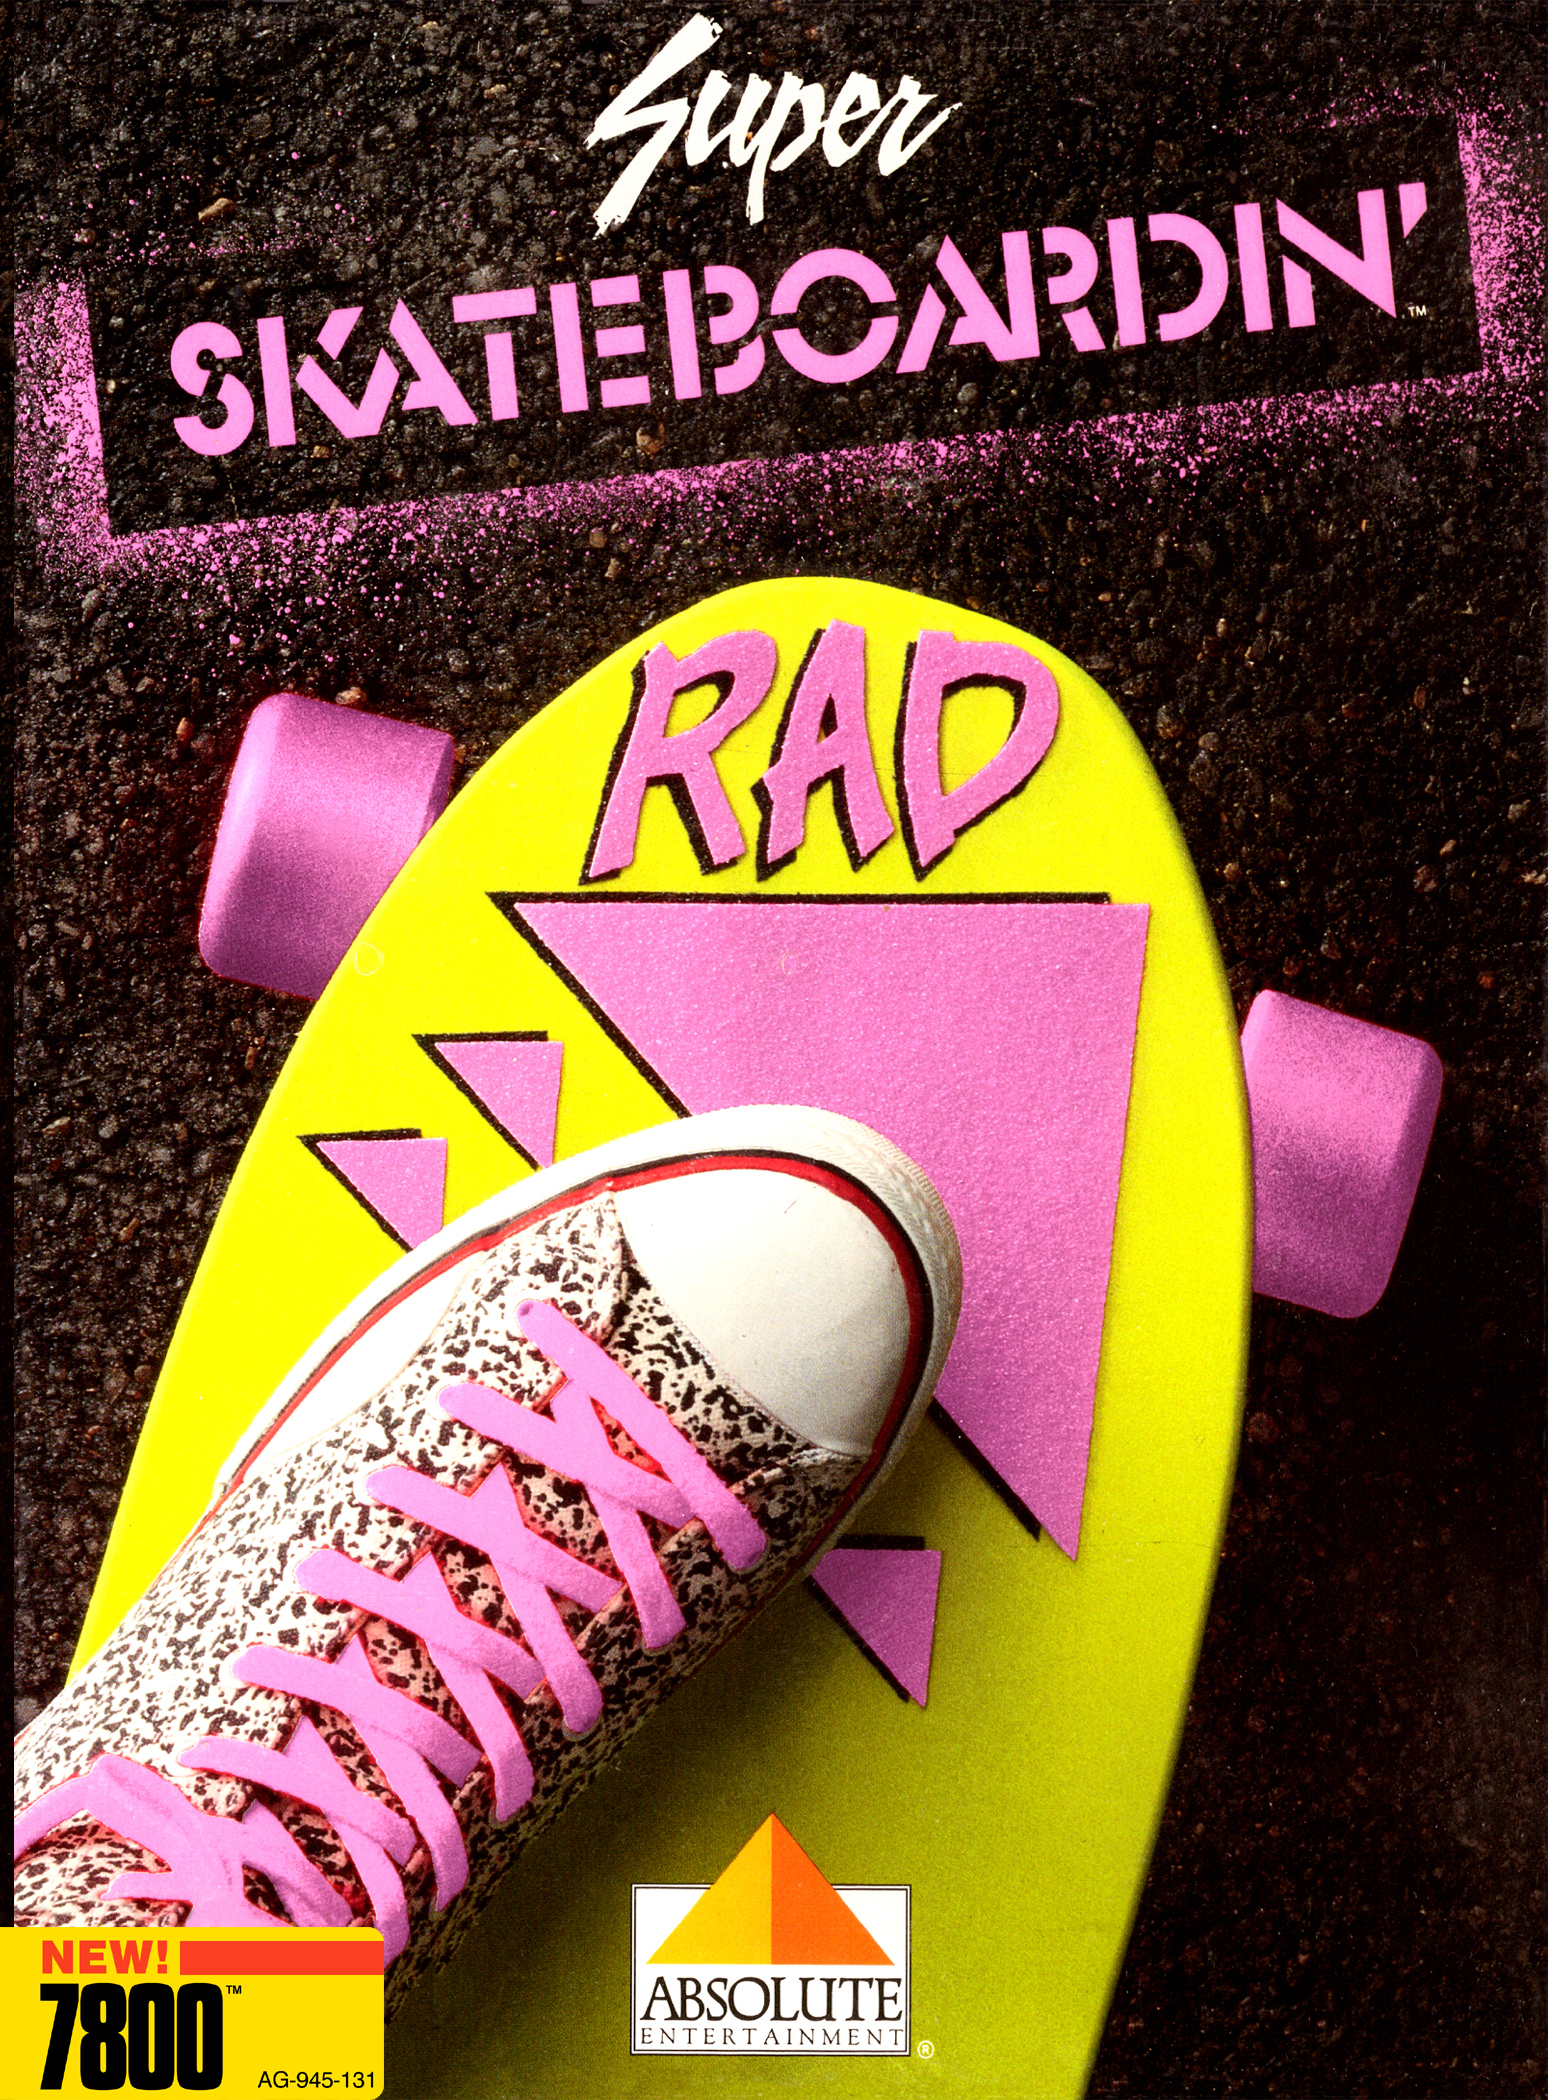 Super Skateboardin' Picture